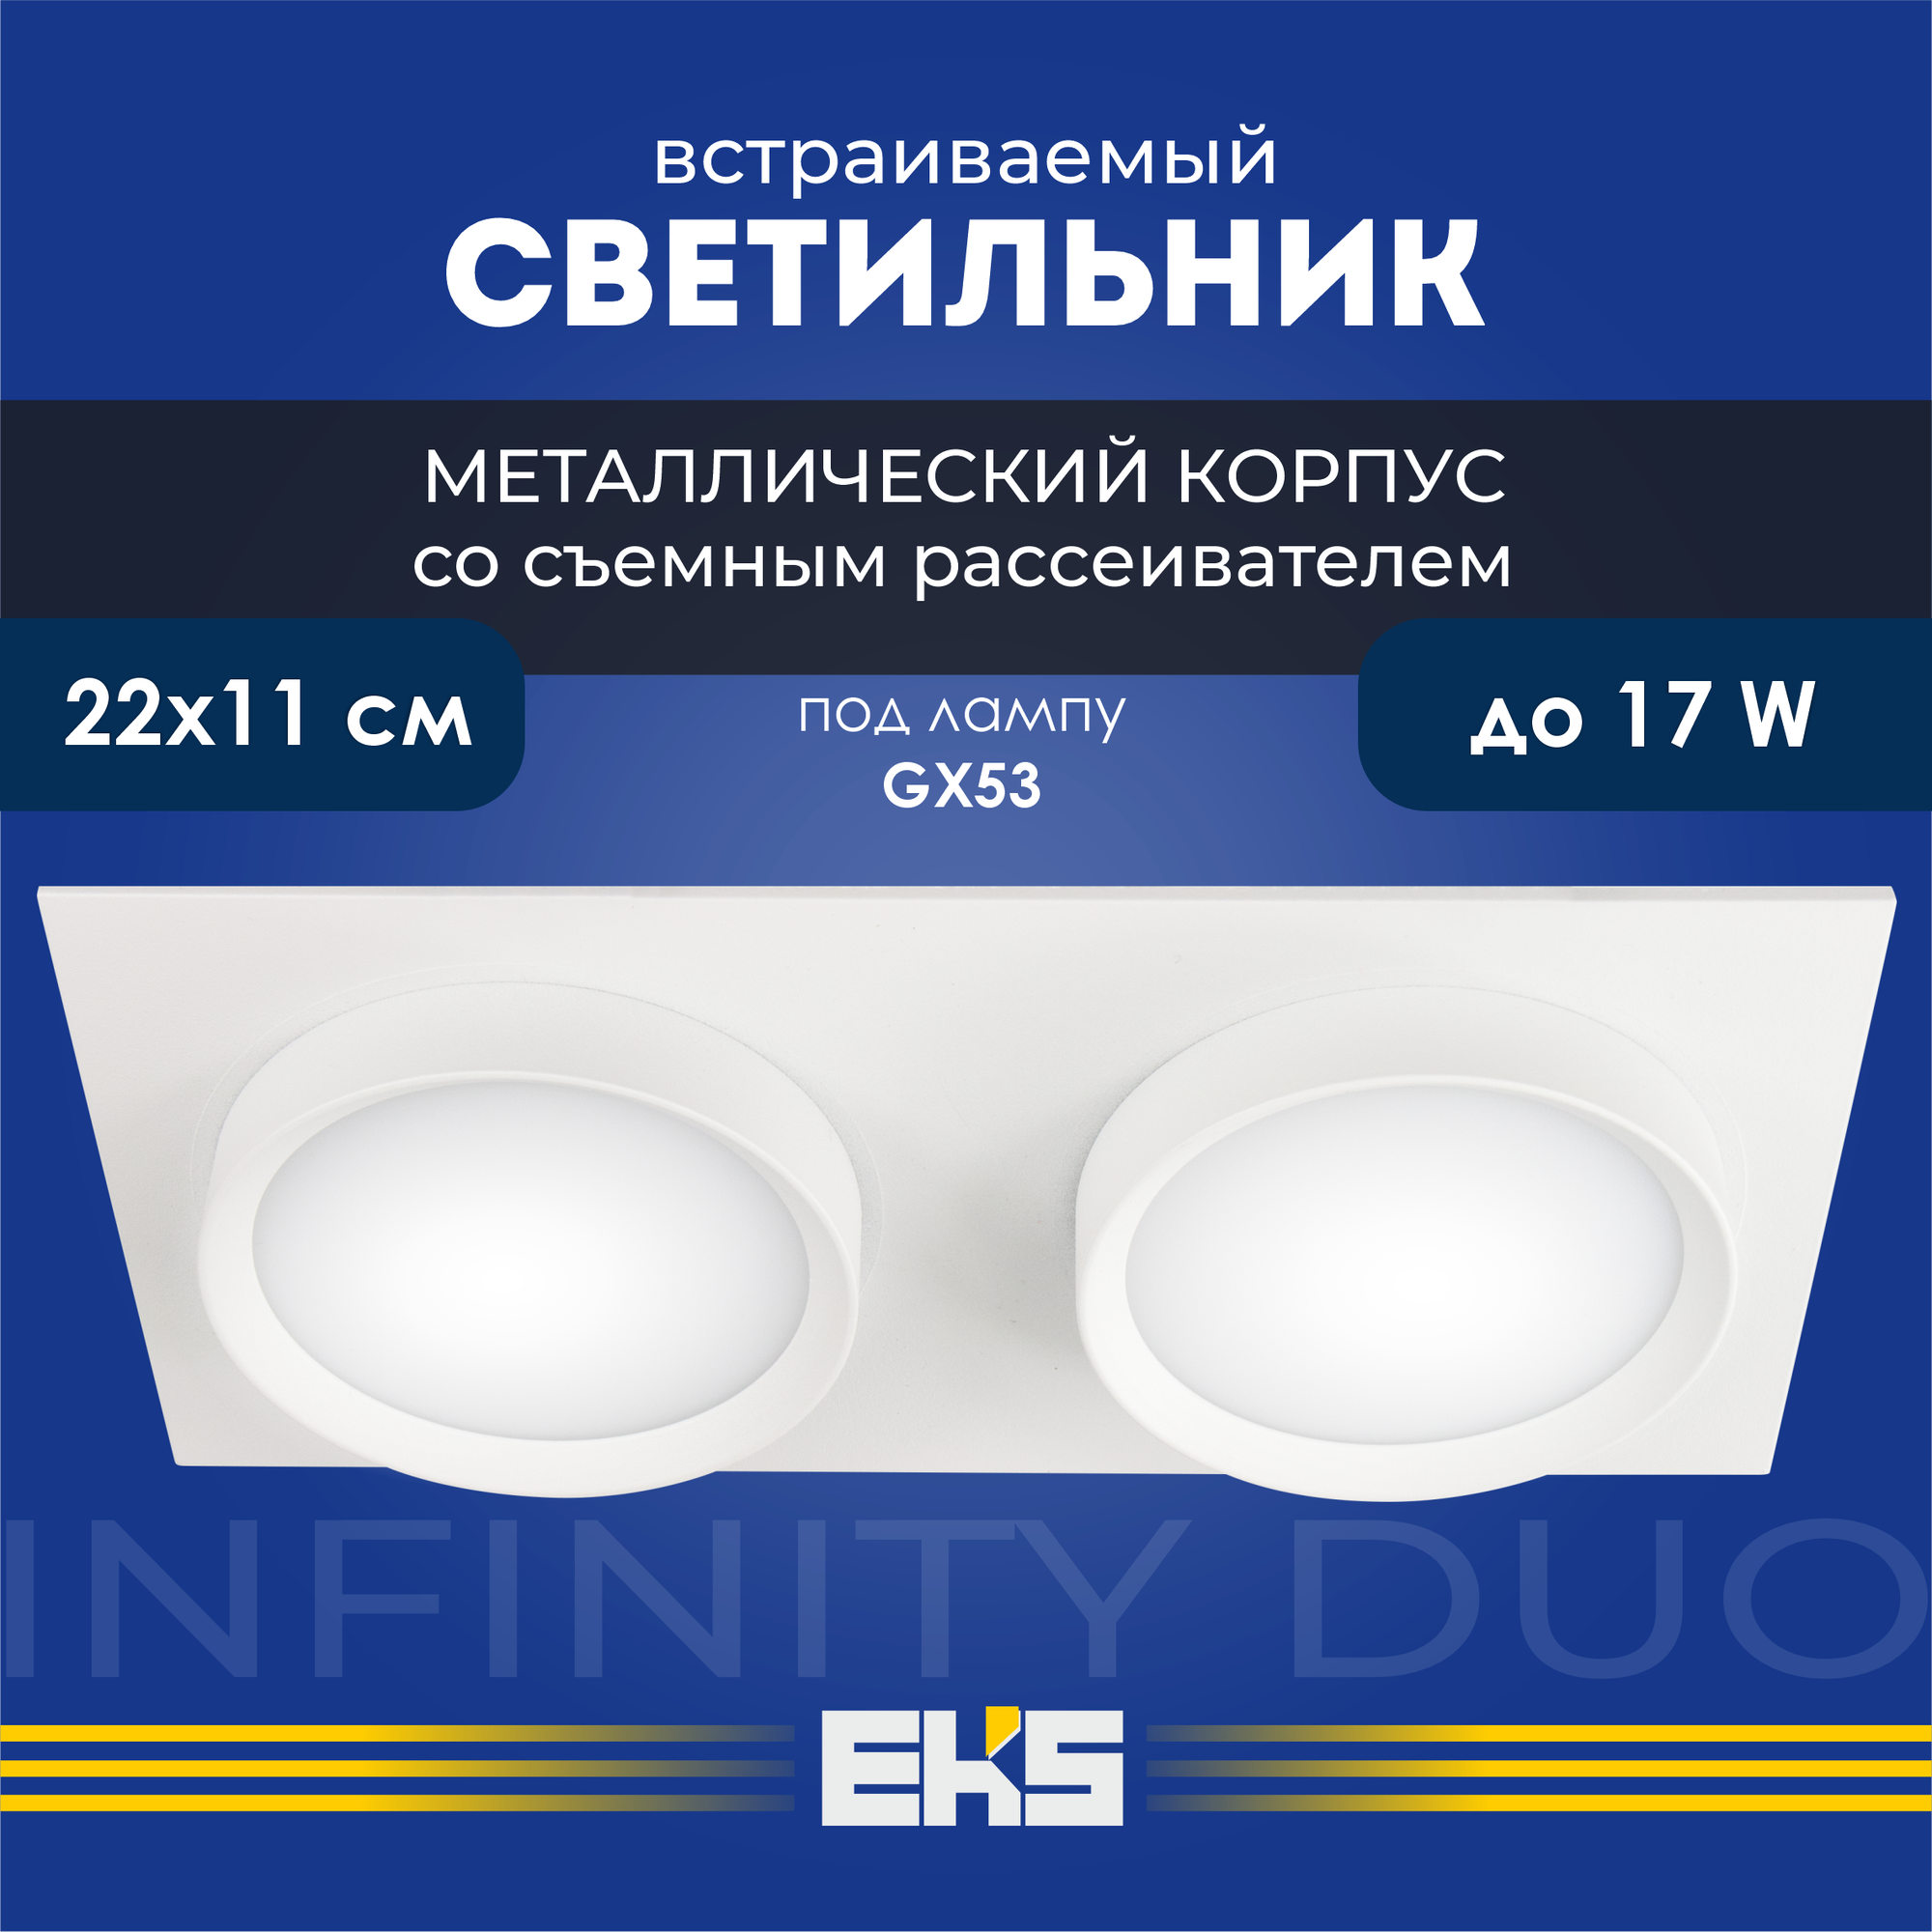 Встраиваемый светильник EKS Art Infinity Duo белый (GX53, алюминий), 1 шт.